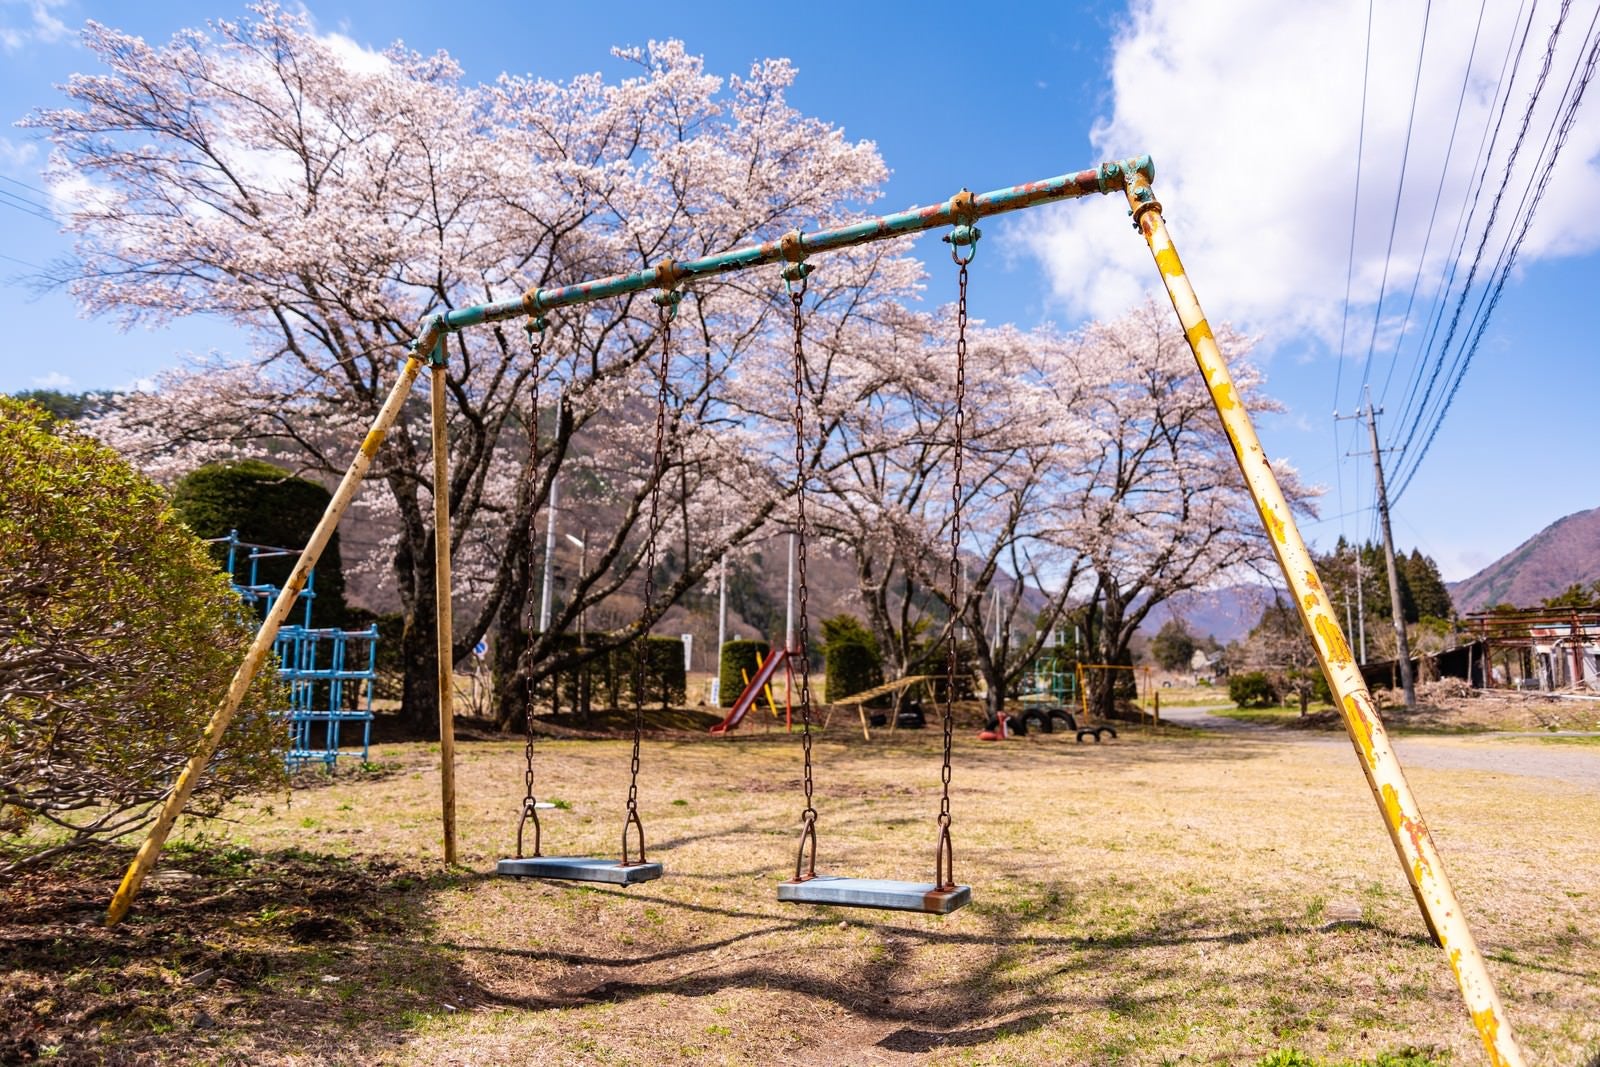 「児童公園に咲く桜とブランコ」の写真